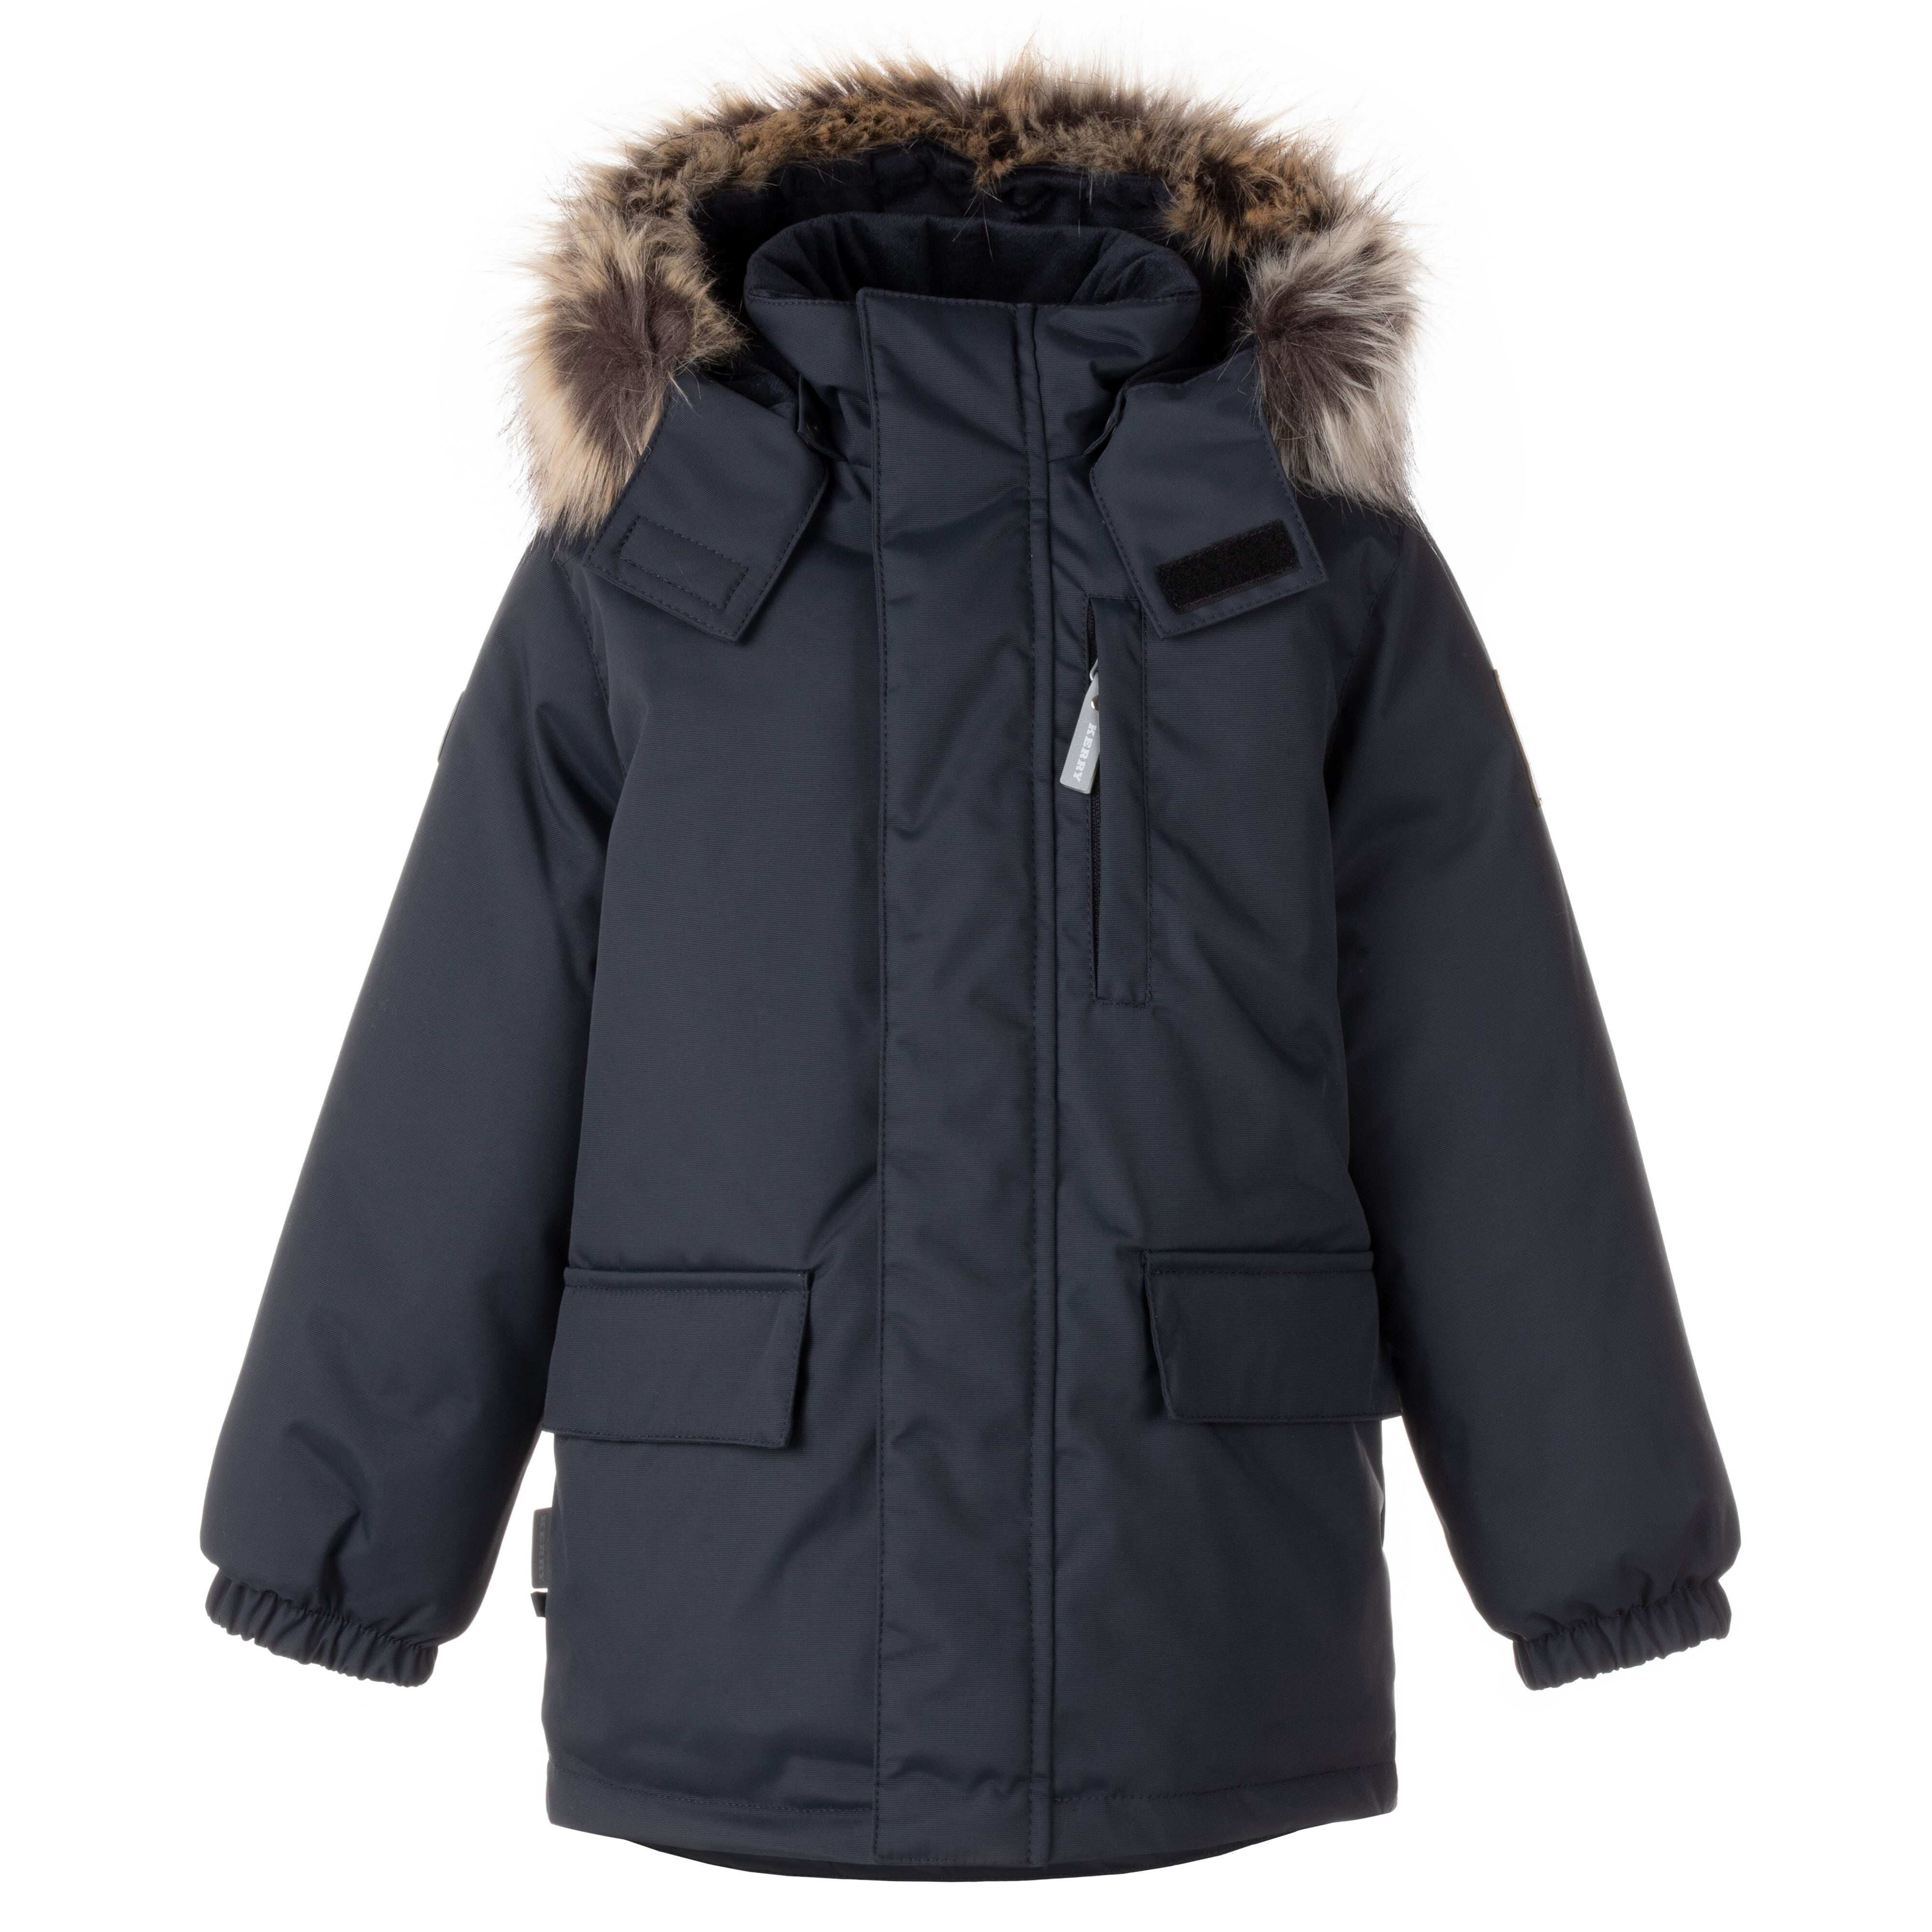 Куртка детская KERRY K22441 цв. черный р. 110